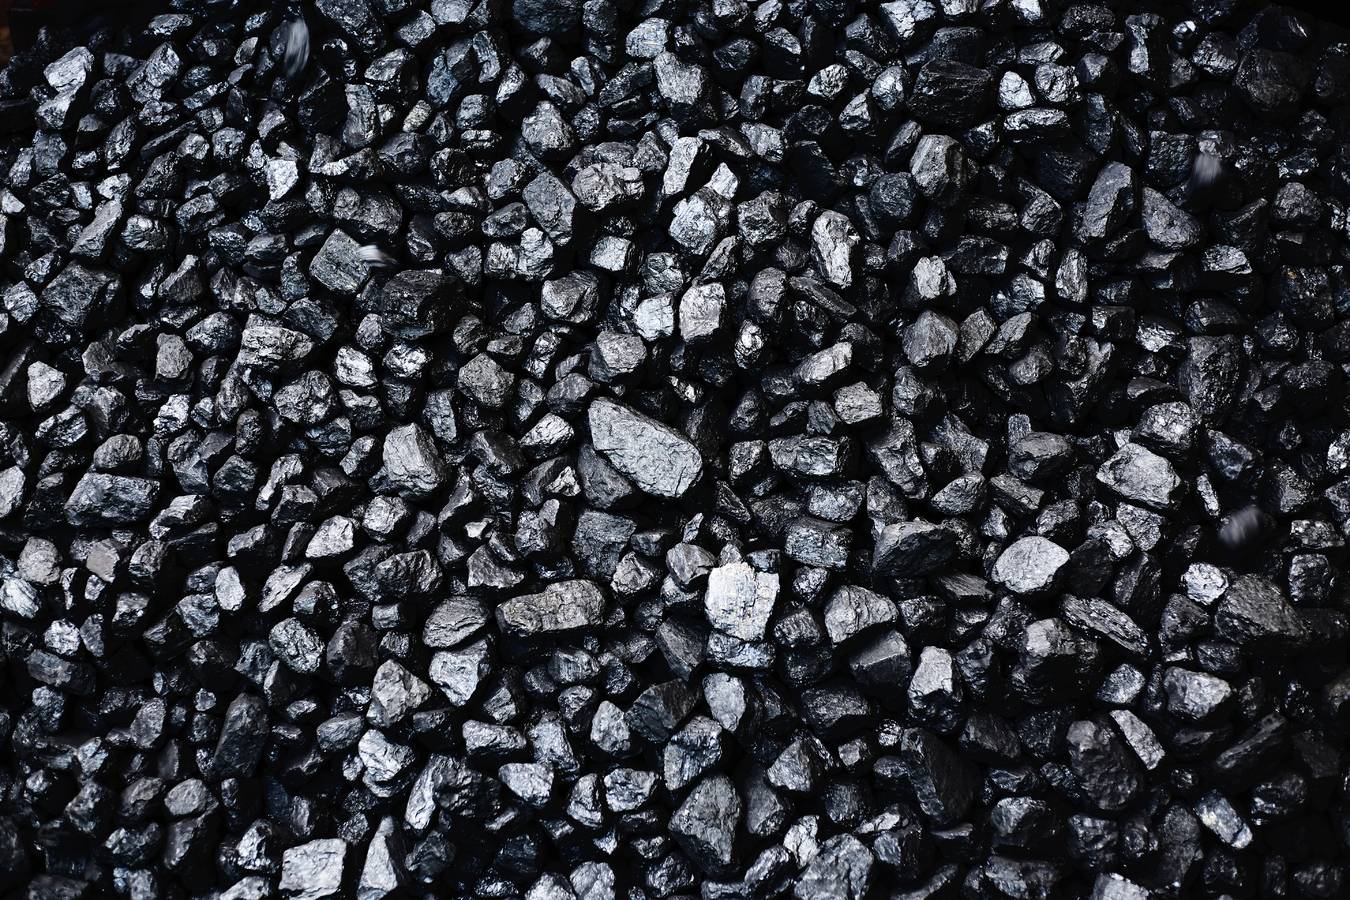 Путин: угольная отрасль развивается и наращивает добычу угля вопреки санкциям